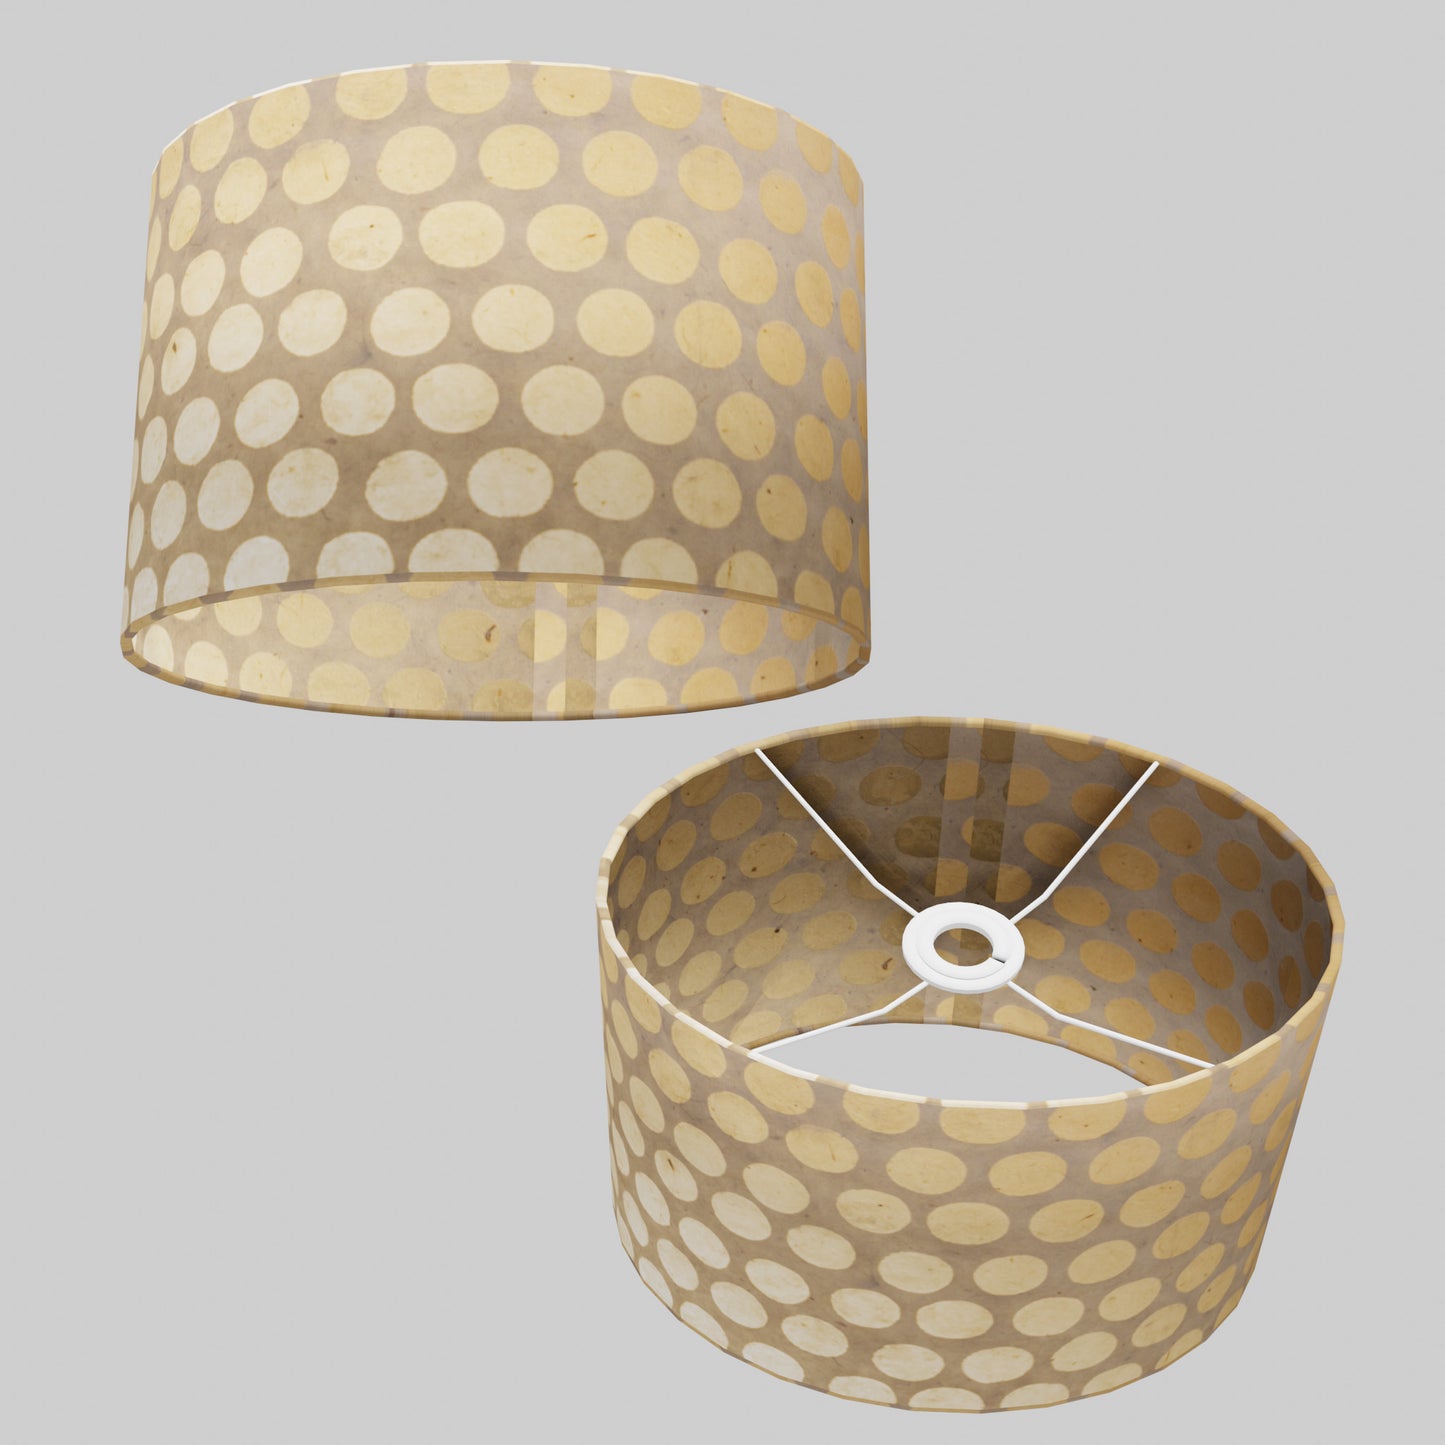 Oval Lamp Shade - P85 ~ Batik Dots on Natural, 30cm(w) x 20cm(h) x 22cm(d)